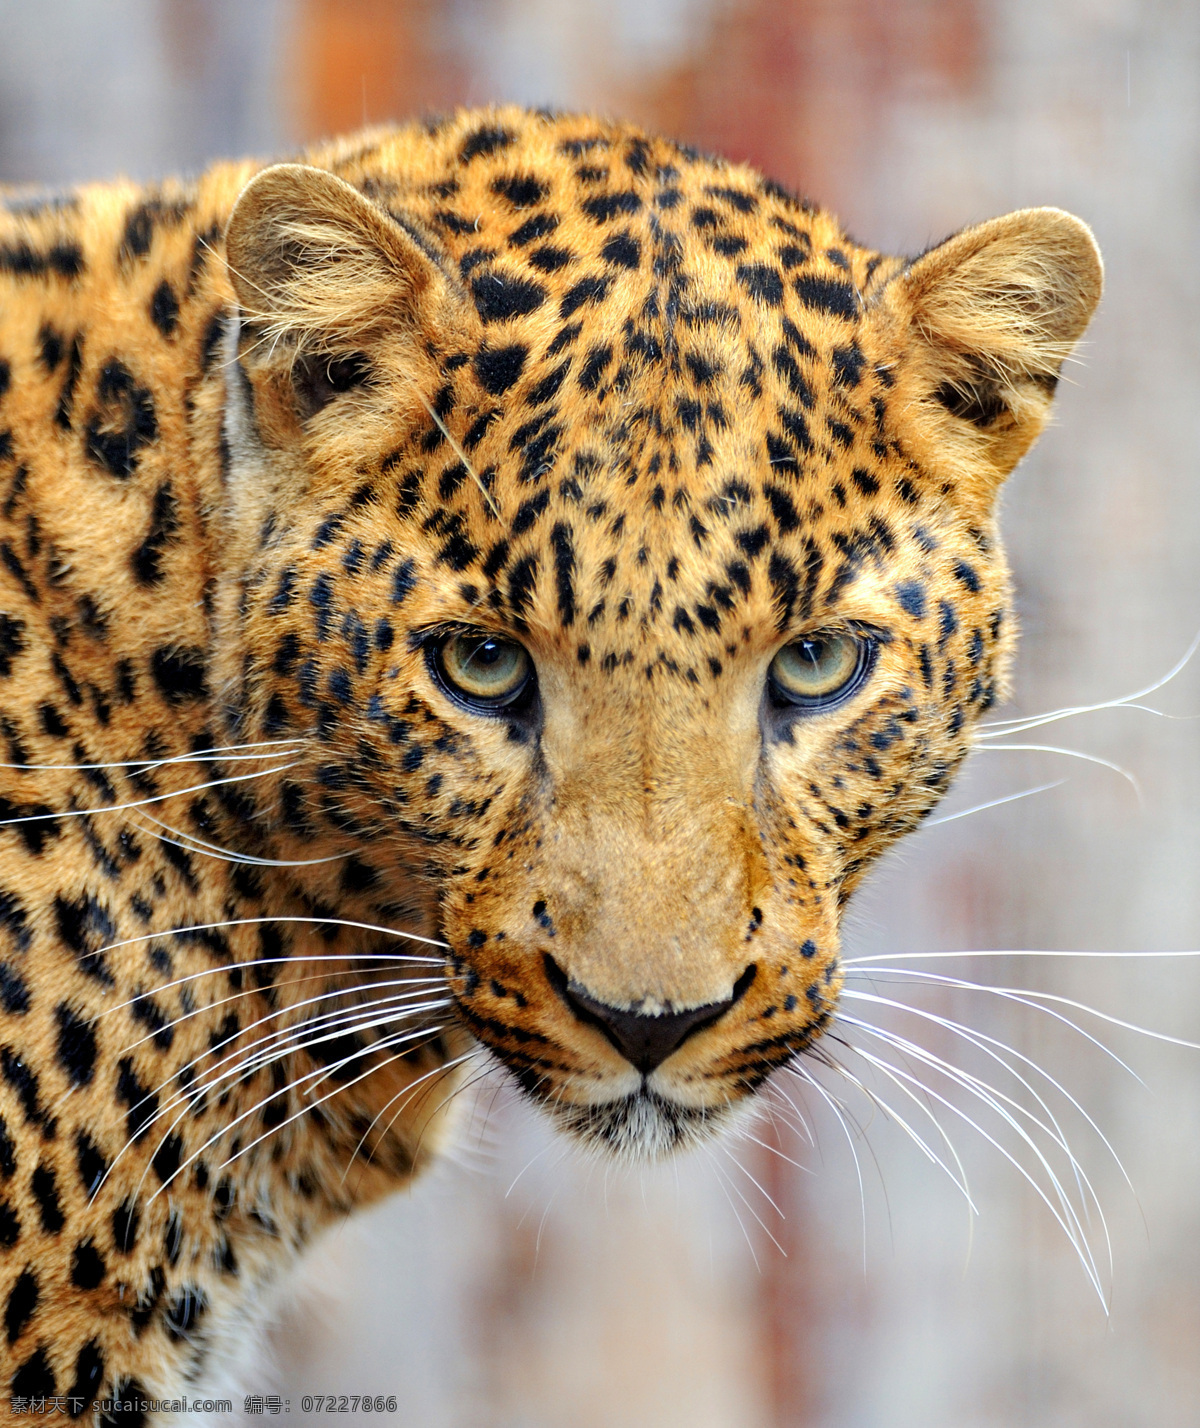 野生动物 素材图片 豹子 豹子摄影 豹子素材 动物素材 动物世界 陆地动物 生物世界